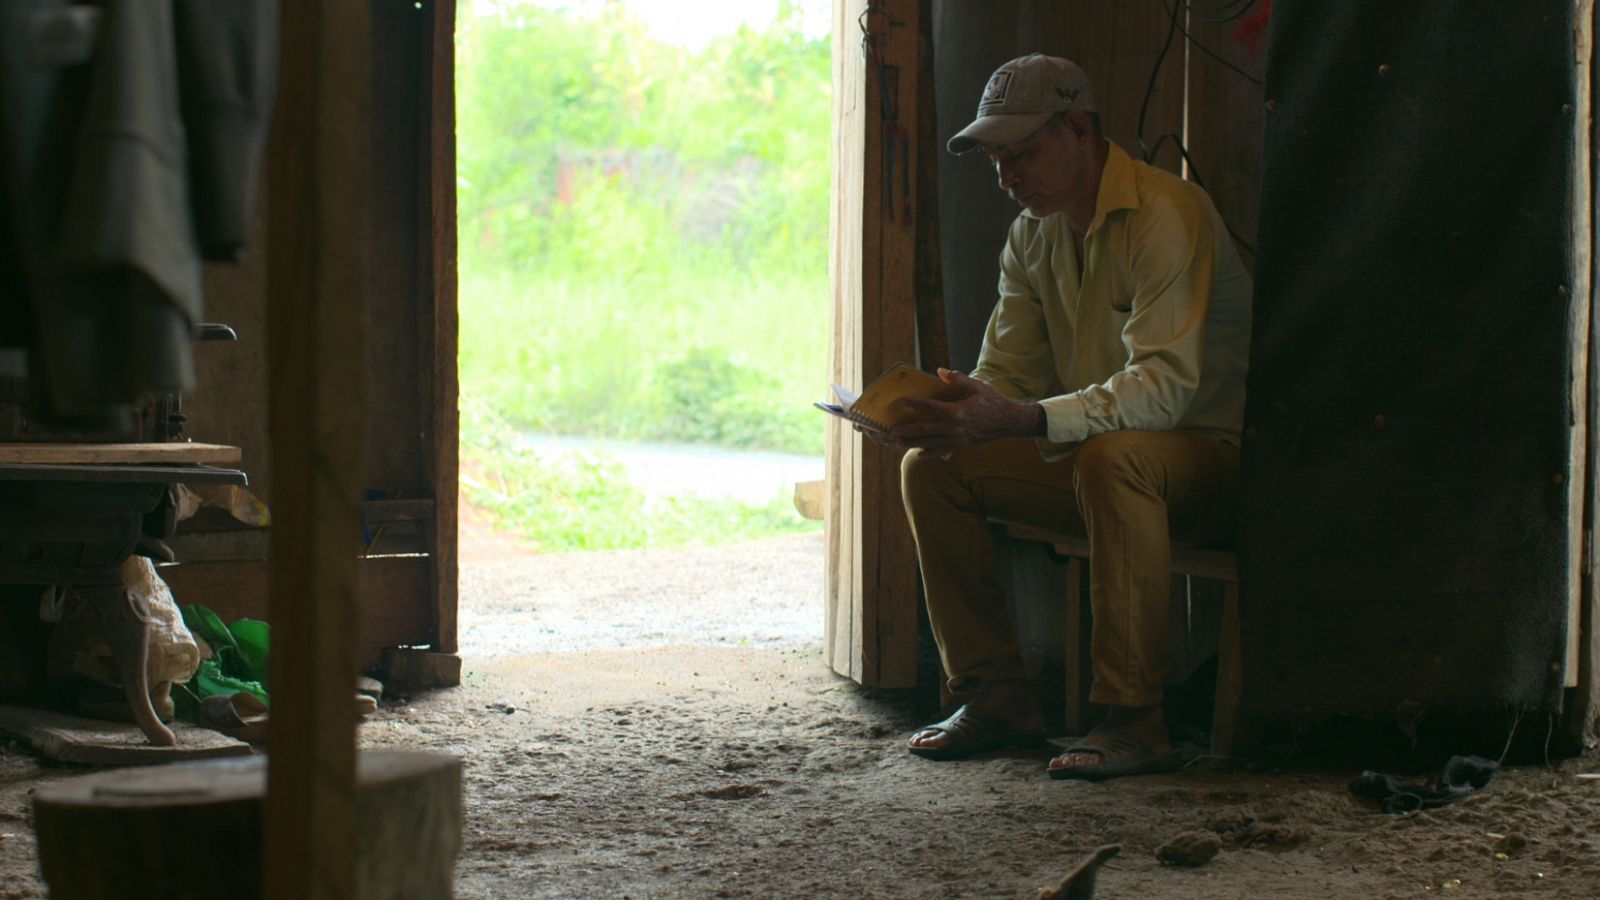 Campesino nicaragüense exiliado en Costa Rica sentado dentro de una casa precaria con suelo de tierra.